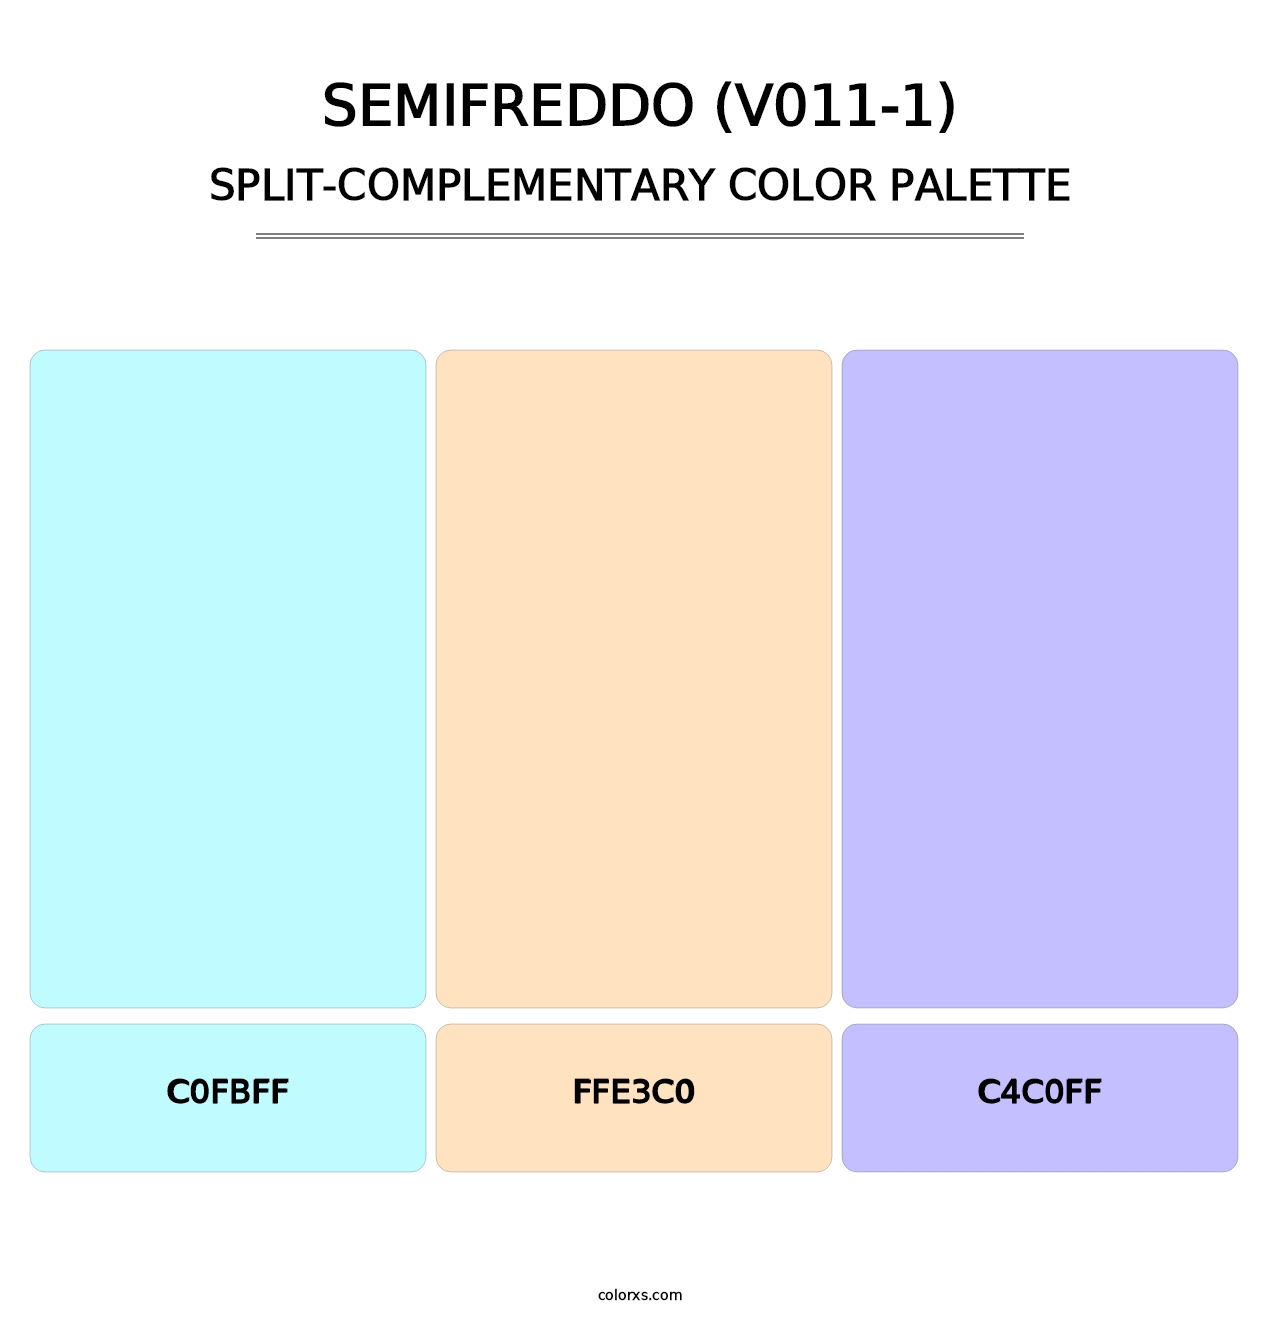 Semifreddo (V011-1) - Split-Complementary Color Palette